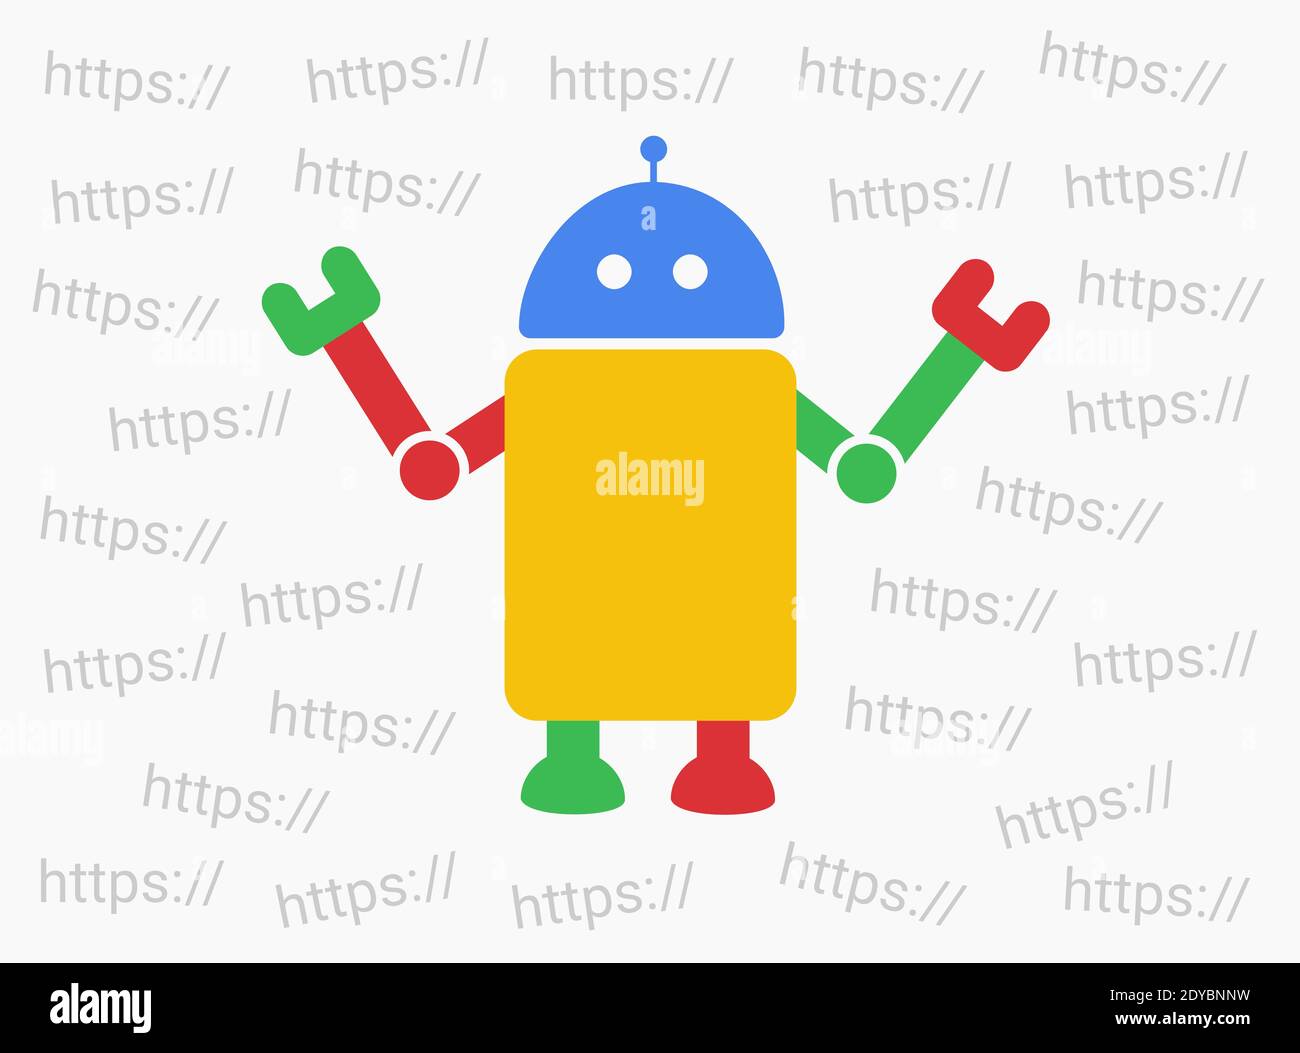 Bot et web robot choisit le domaine Internet - indexation et la recherche de pages et de pages web sur le site web et le site web en ligne. Processus du moteur de recherche Web Banque D'Images